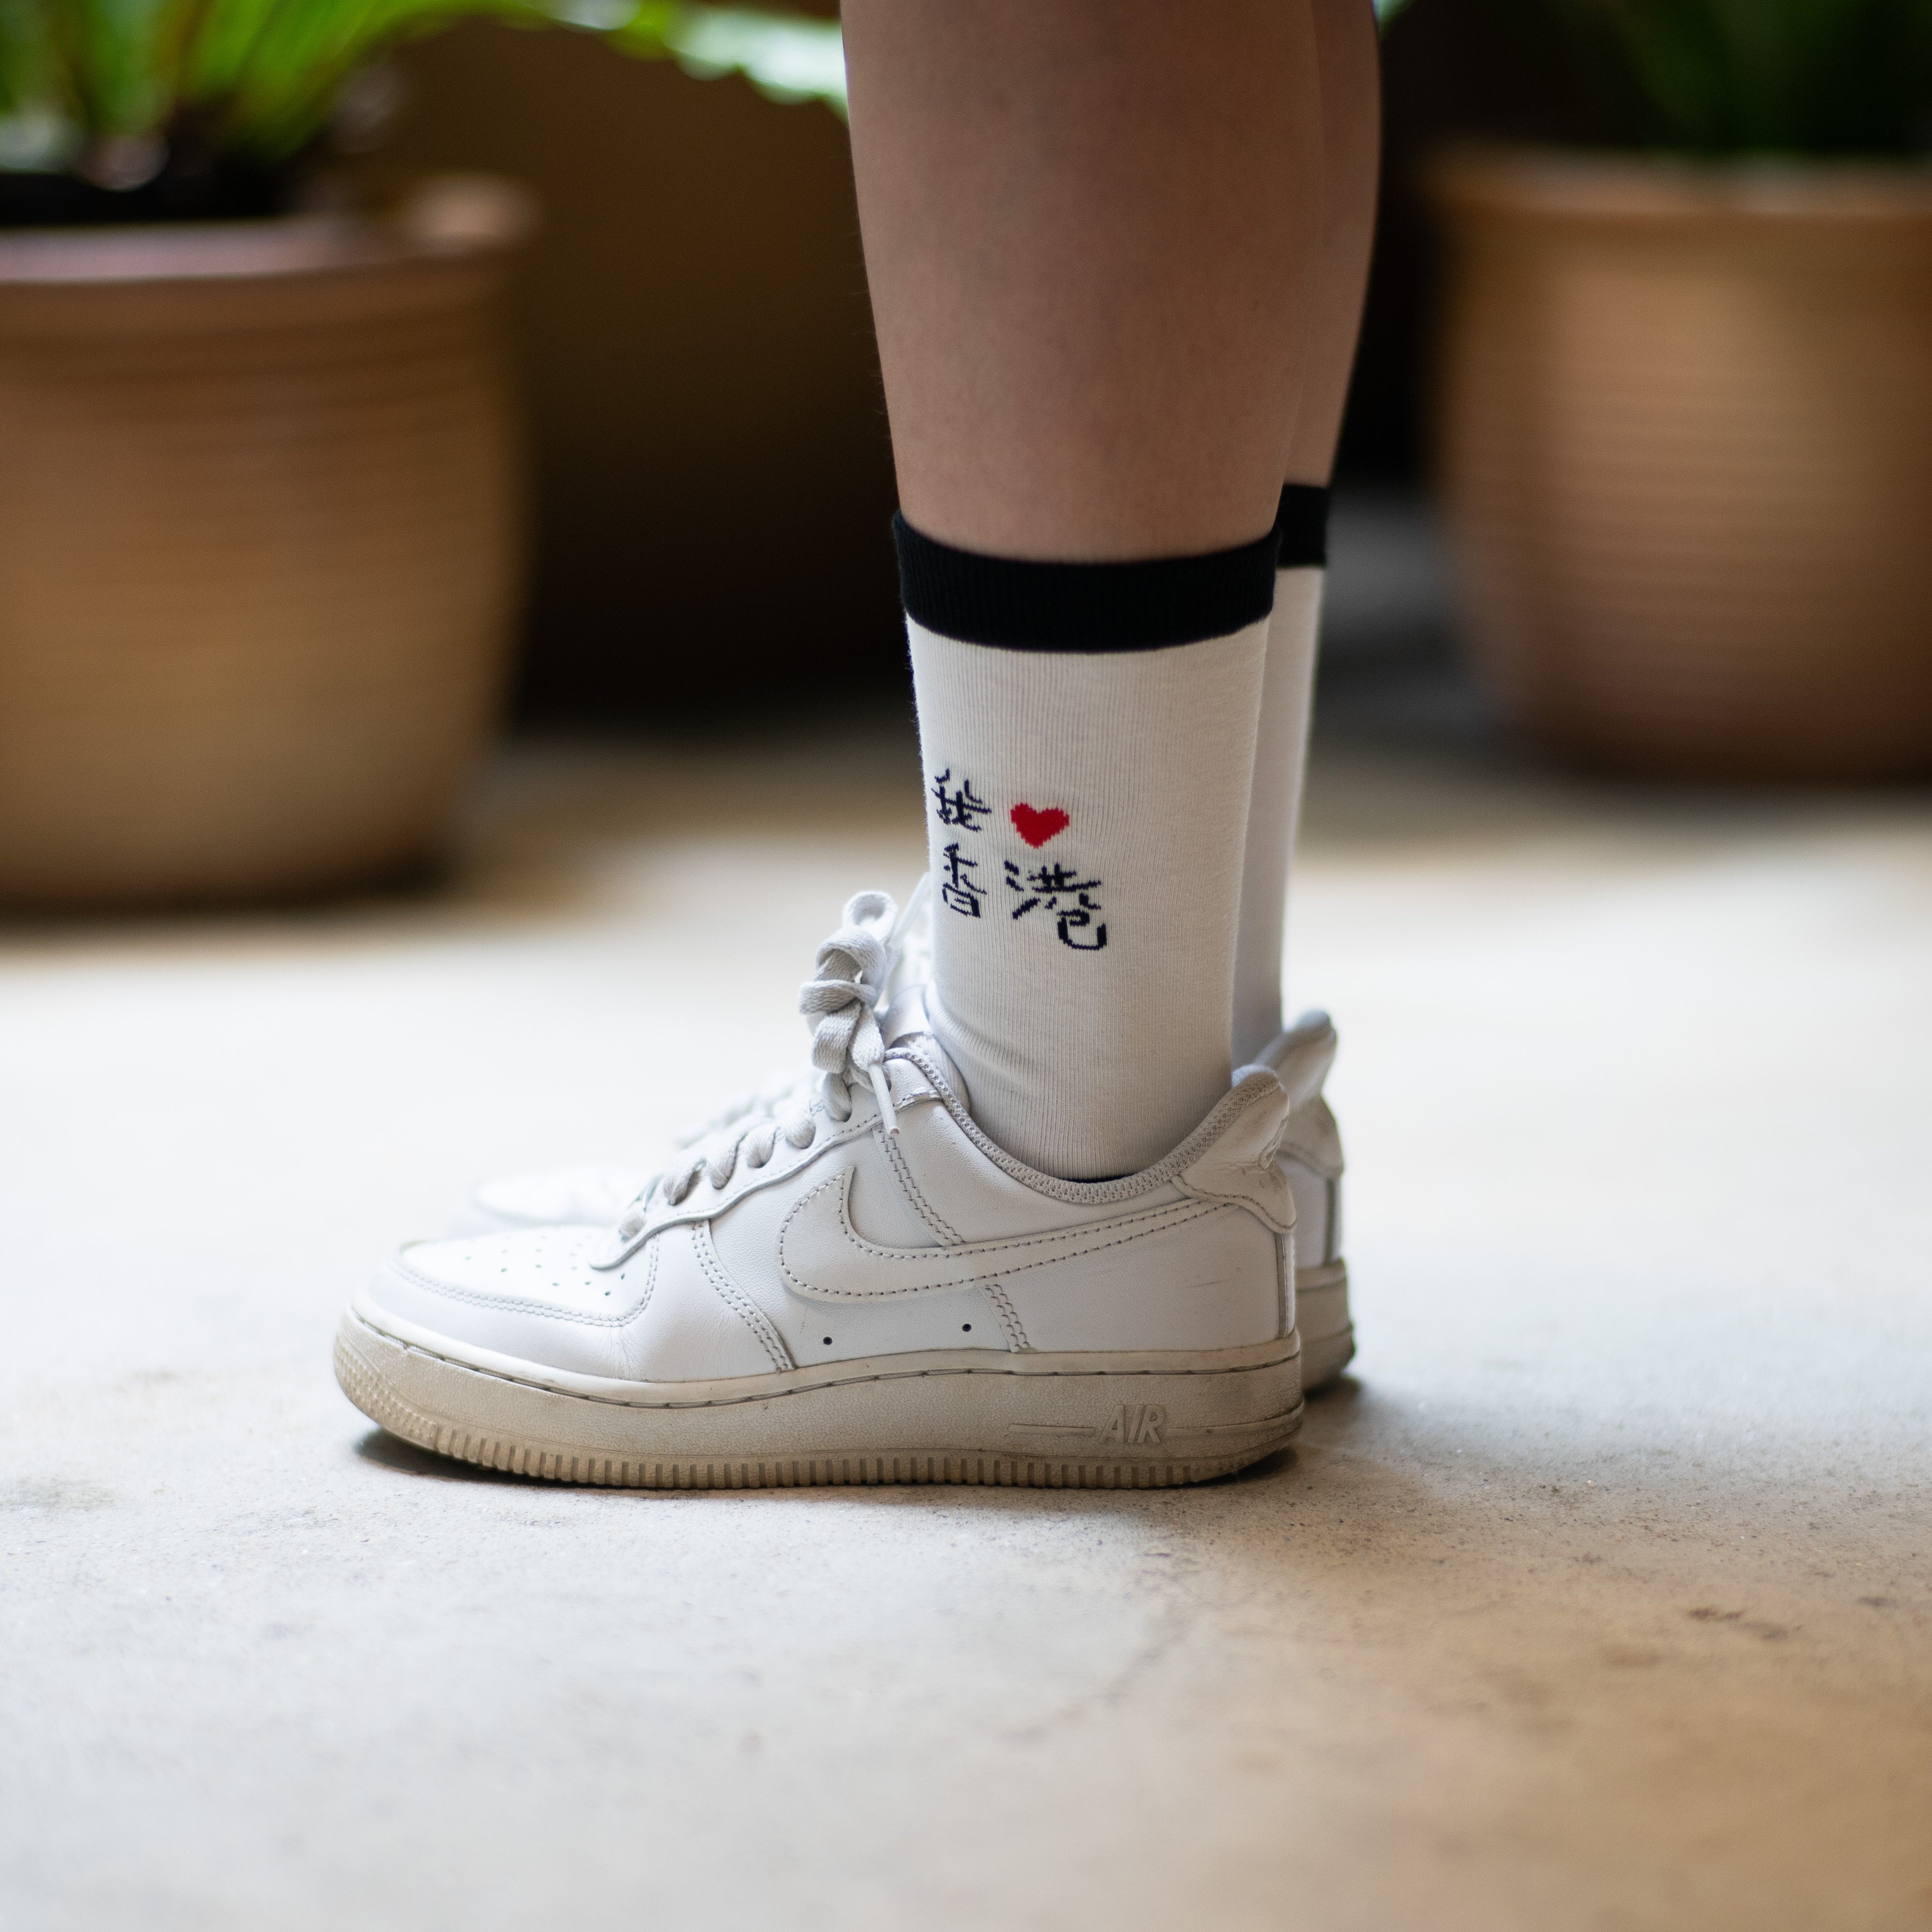 Playful Socks x GOD - I Love Hong Kong, White